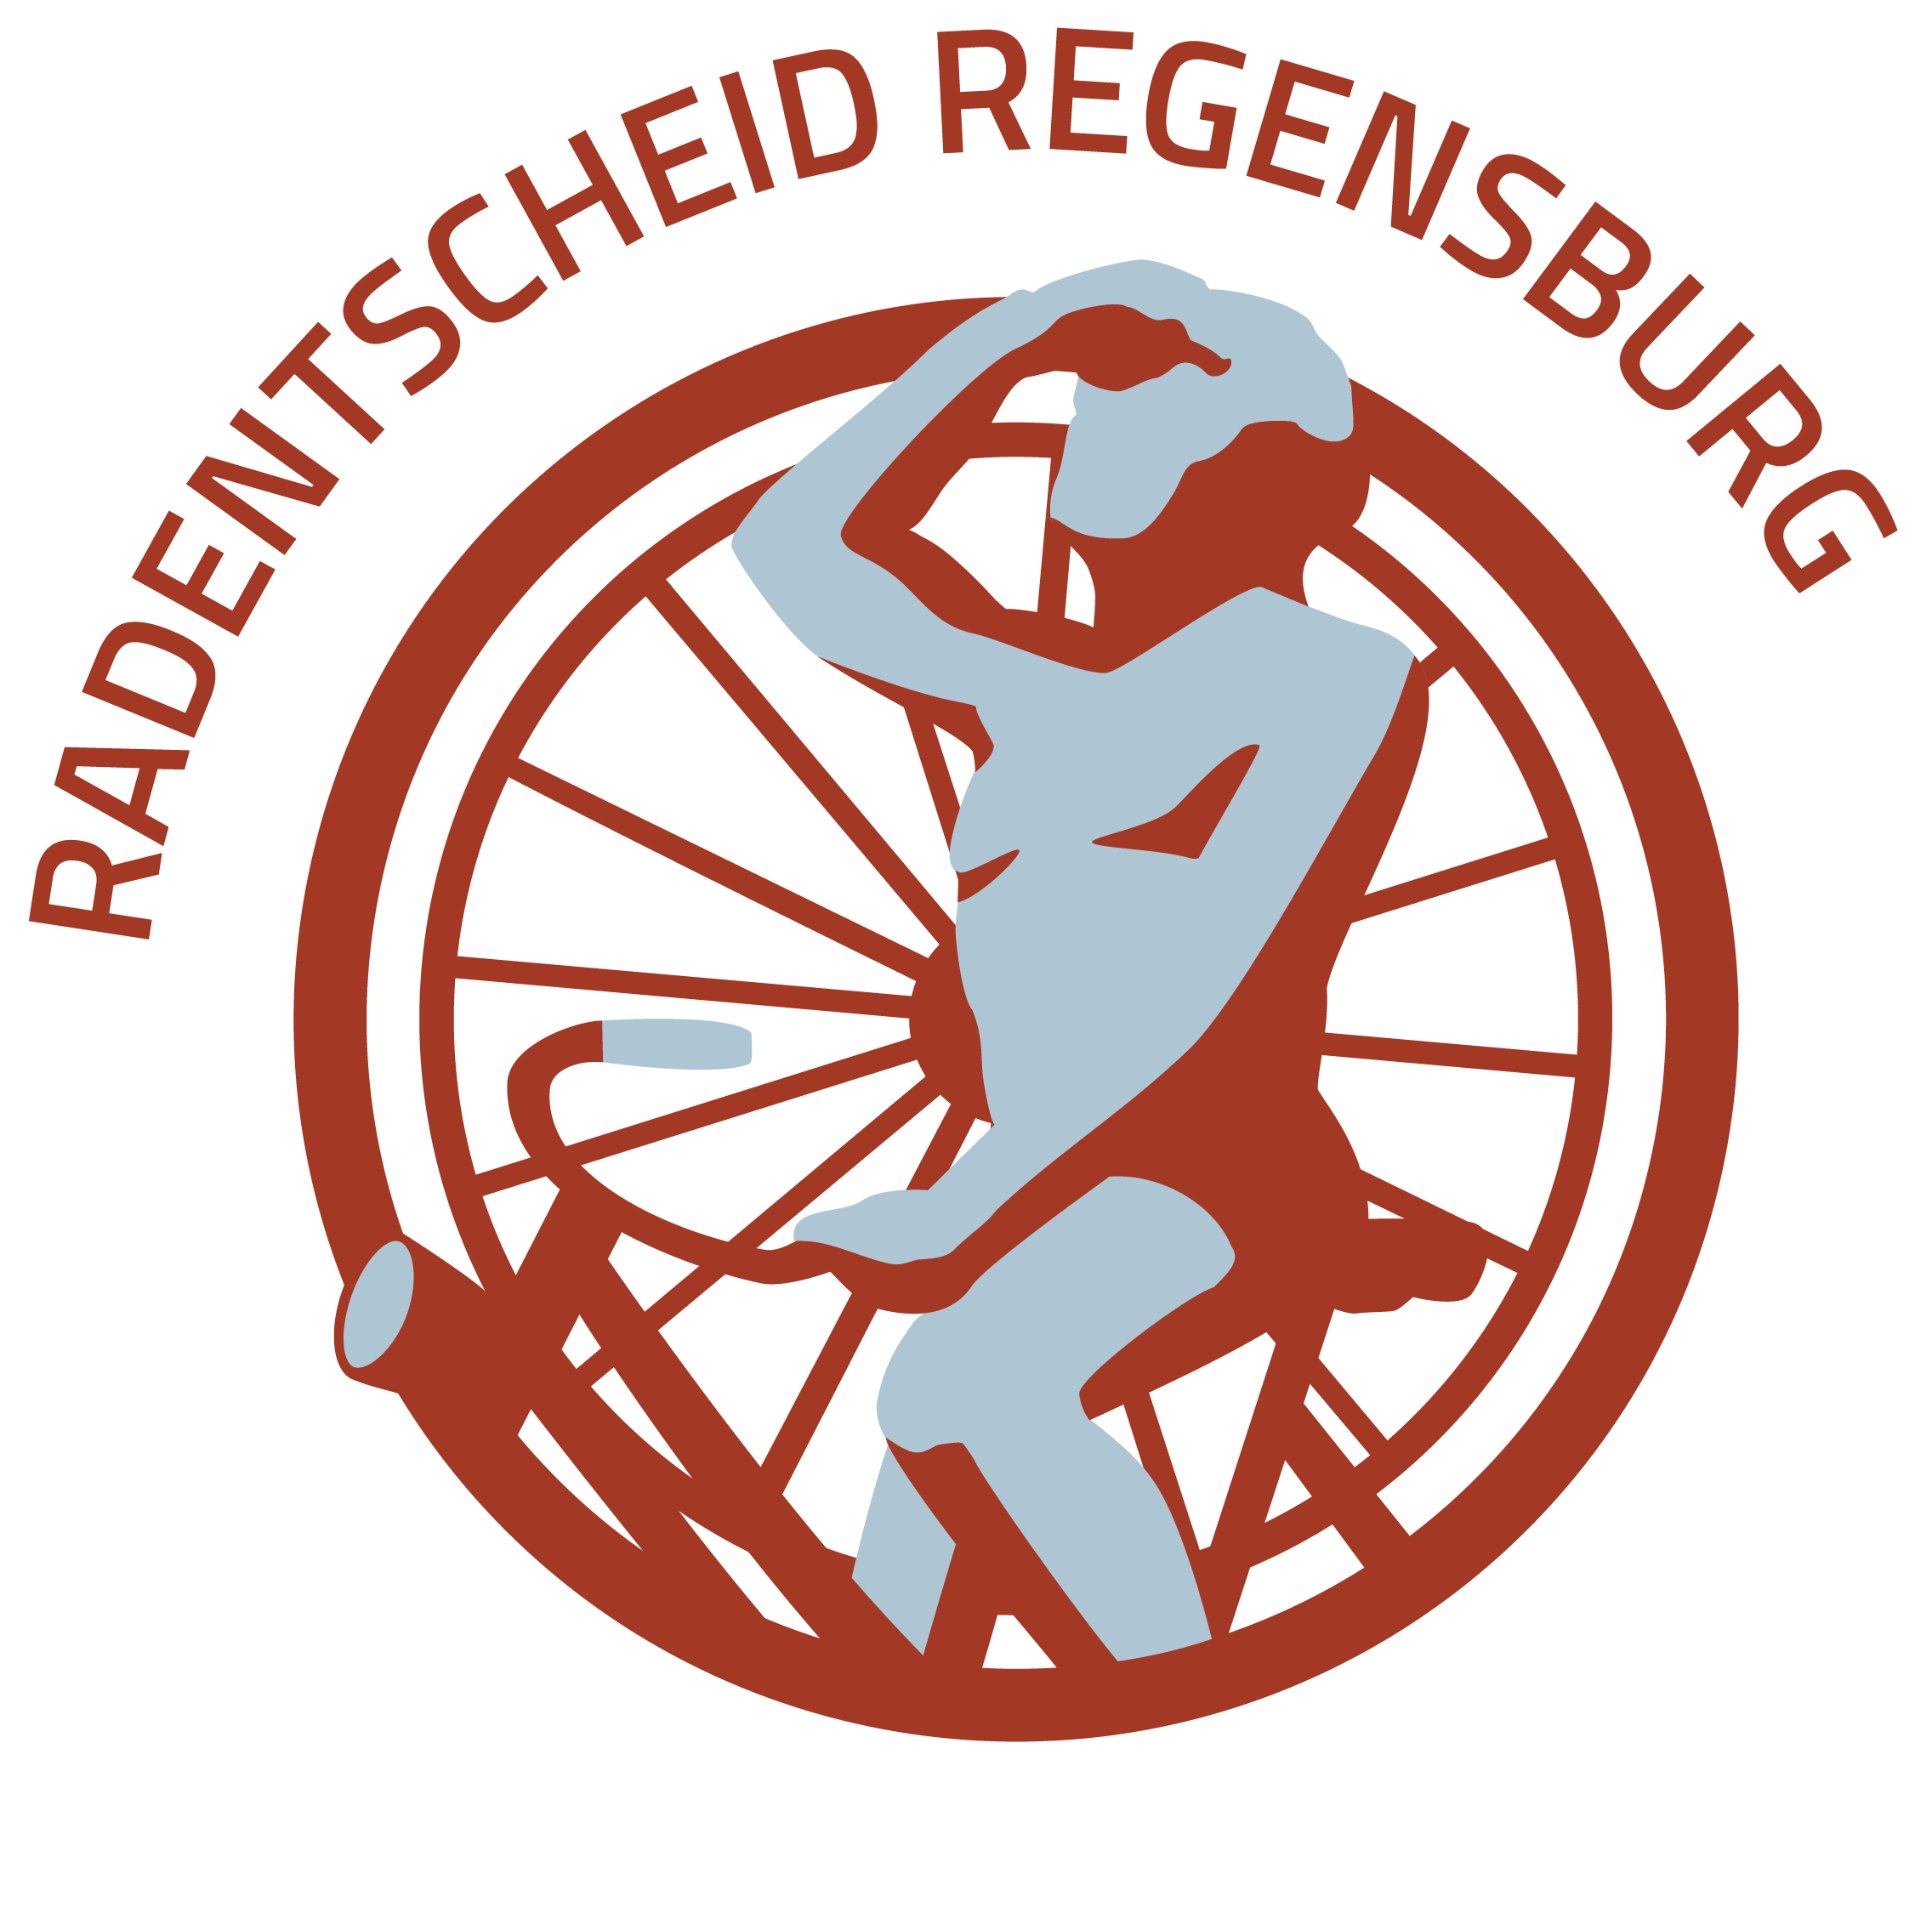 Radentscheid Regensburg